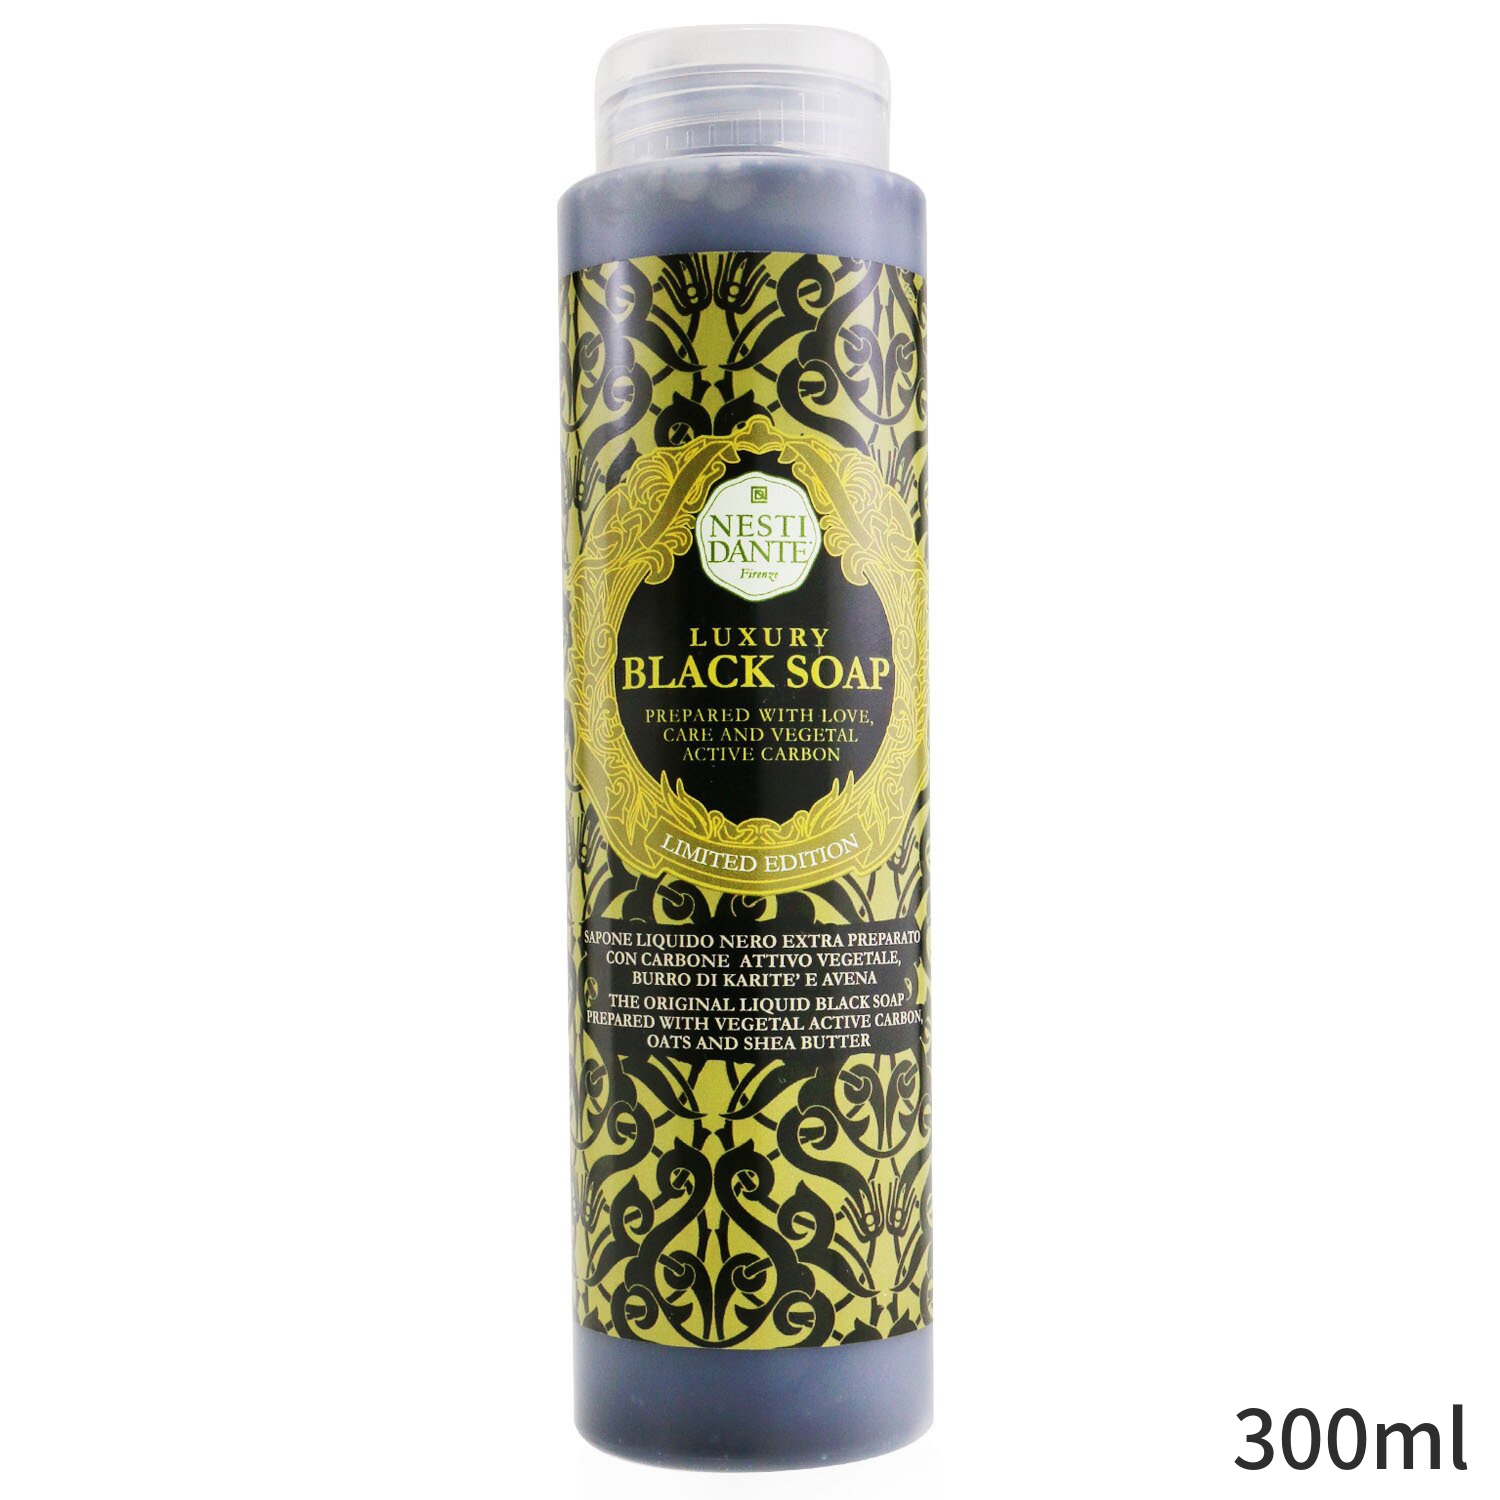 史上最も激安 ネスティダンテ バス シャワー Nesti Dante Luxury Liquid Black Soap With Vegetal Active Carbon Shower Gel Limited Edition 300ml レディース スキンケア 女性用 基礎化粧品 ボディ 誕生日プレゼント ギフト 人気 ブランド コスメ Cmdb Md